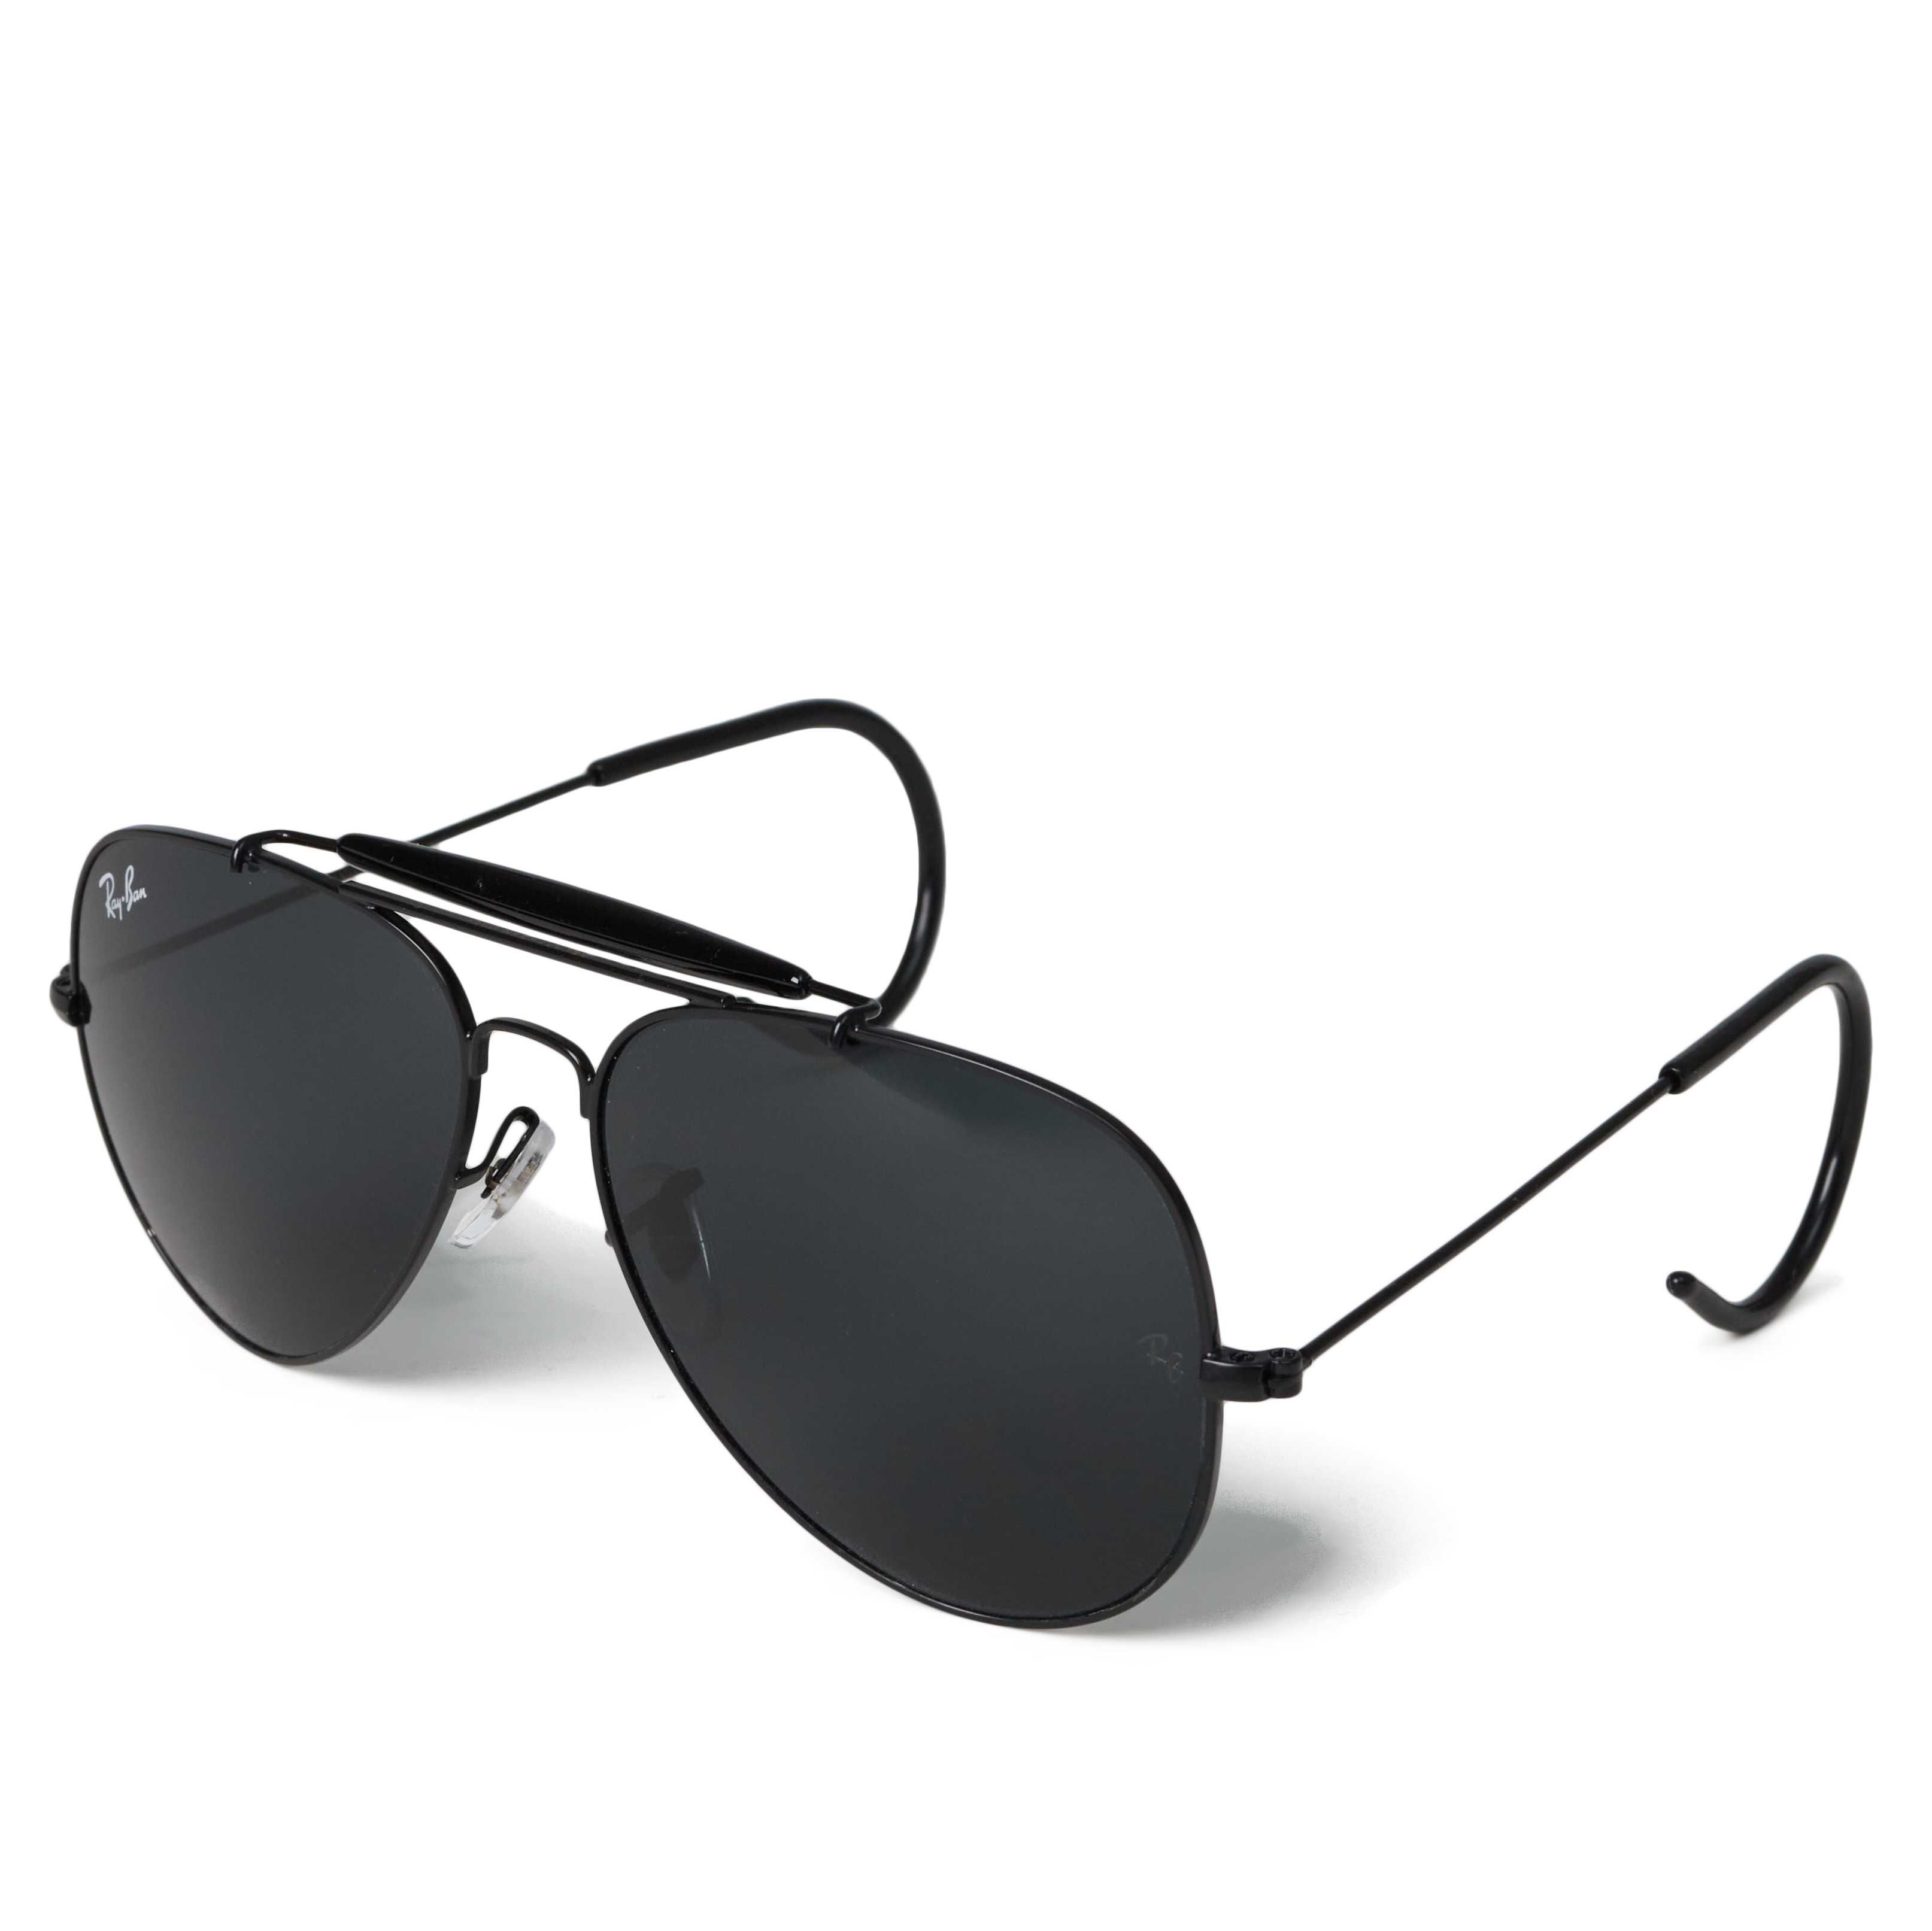 Солнцезащитные очки Ray Ban Outdoorsman 3030 Black-Black 58мм стекло